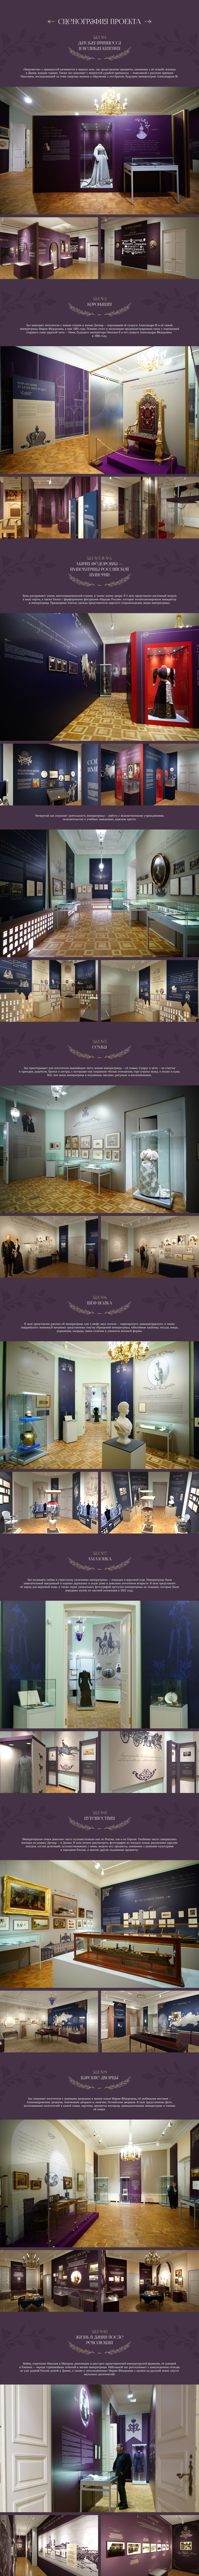 architecture Castle denmark dutch Exhibition  interior design  knight museum Russia visualization